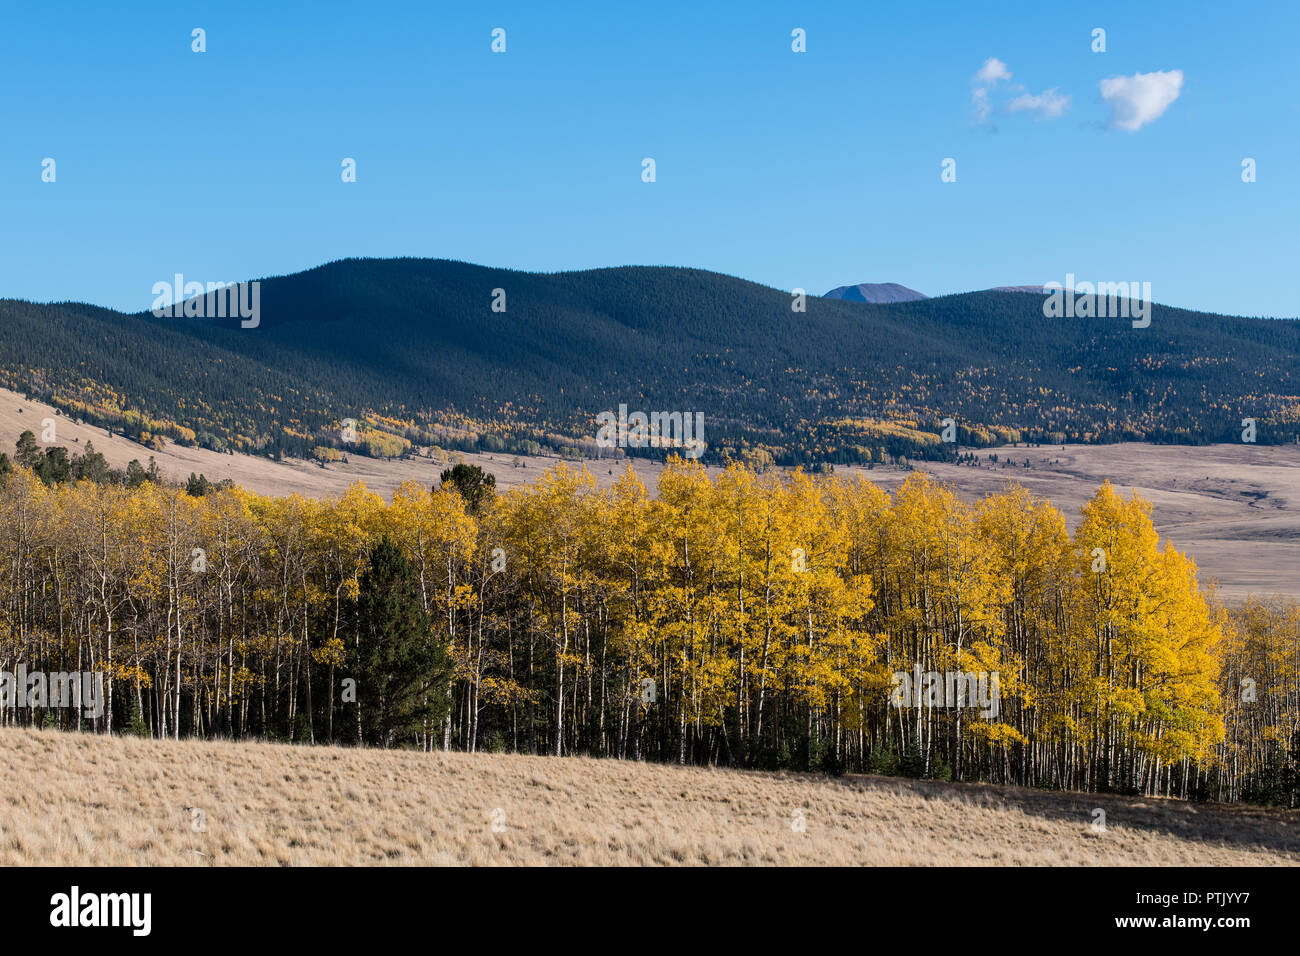 Escena de otoño de un color amarillo dorado Aspen Grove junto al borde de un prado herboso con pastizales y montañas distantes Foto de stock